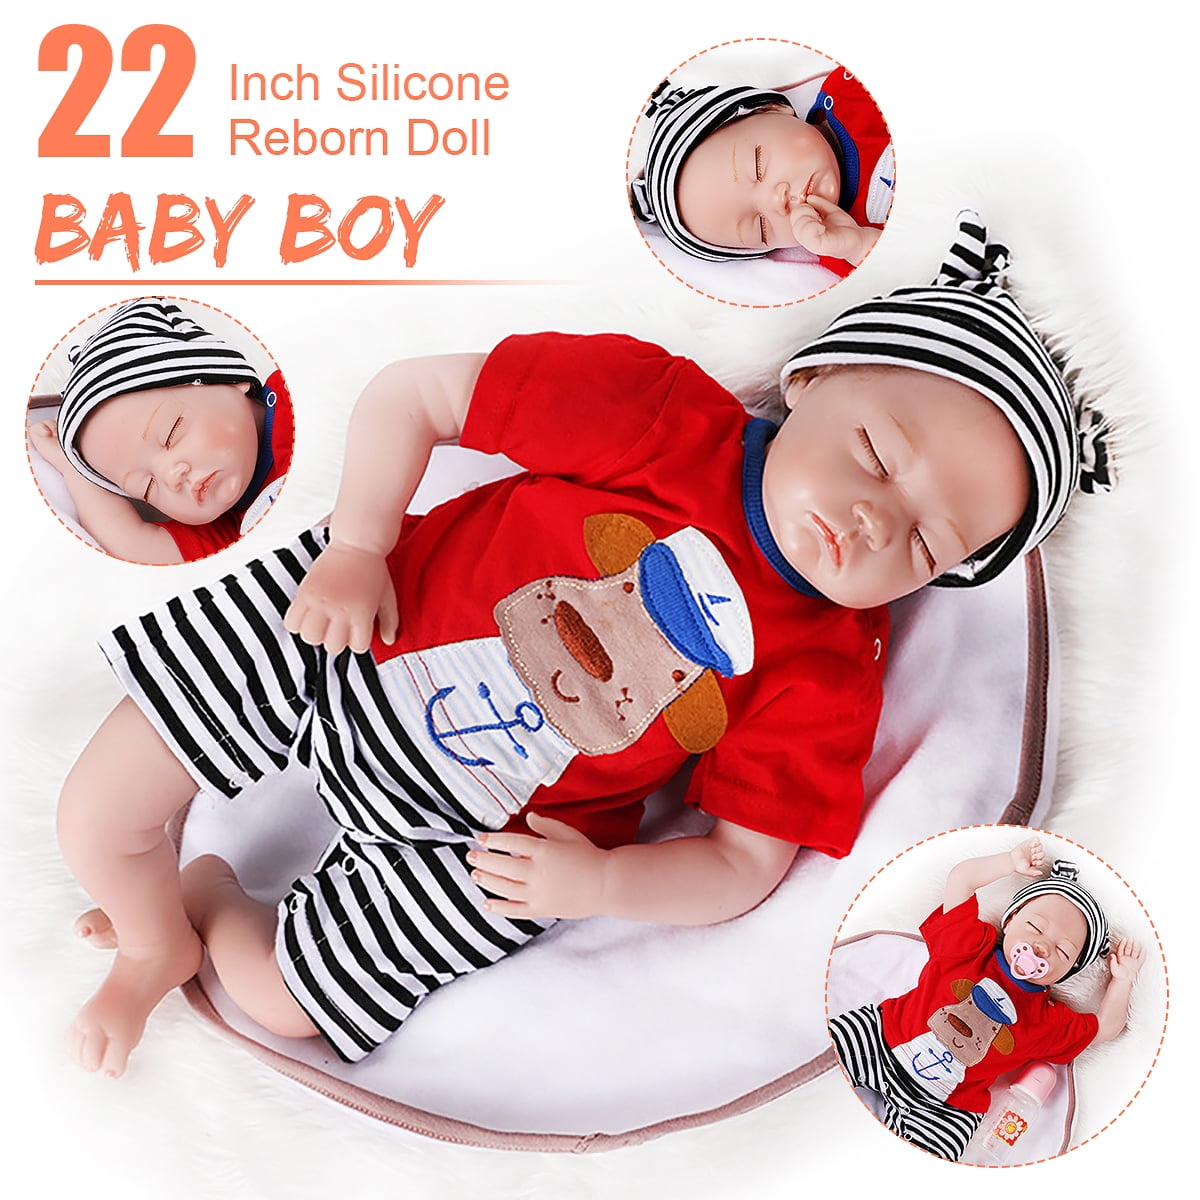 22" Lifelike Reborn Baby Boy Doll Full Body Vinyl Silicone Bathe Newborn Dolls 